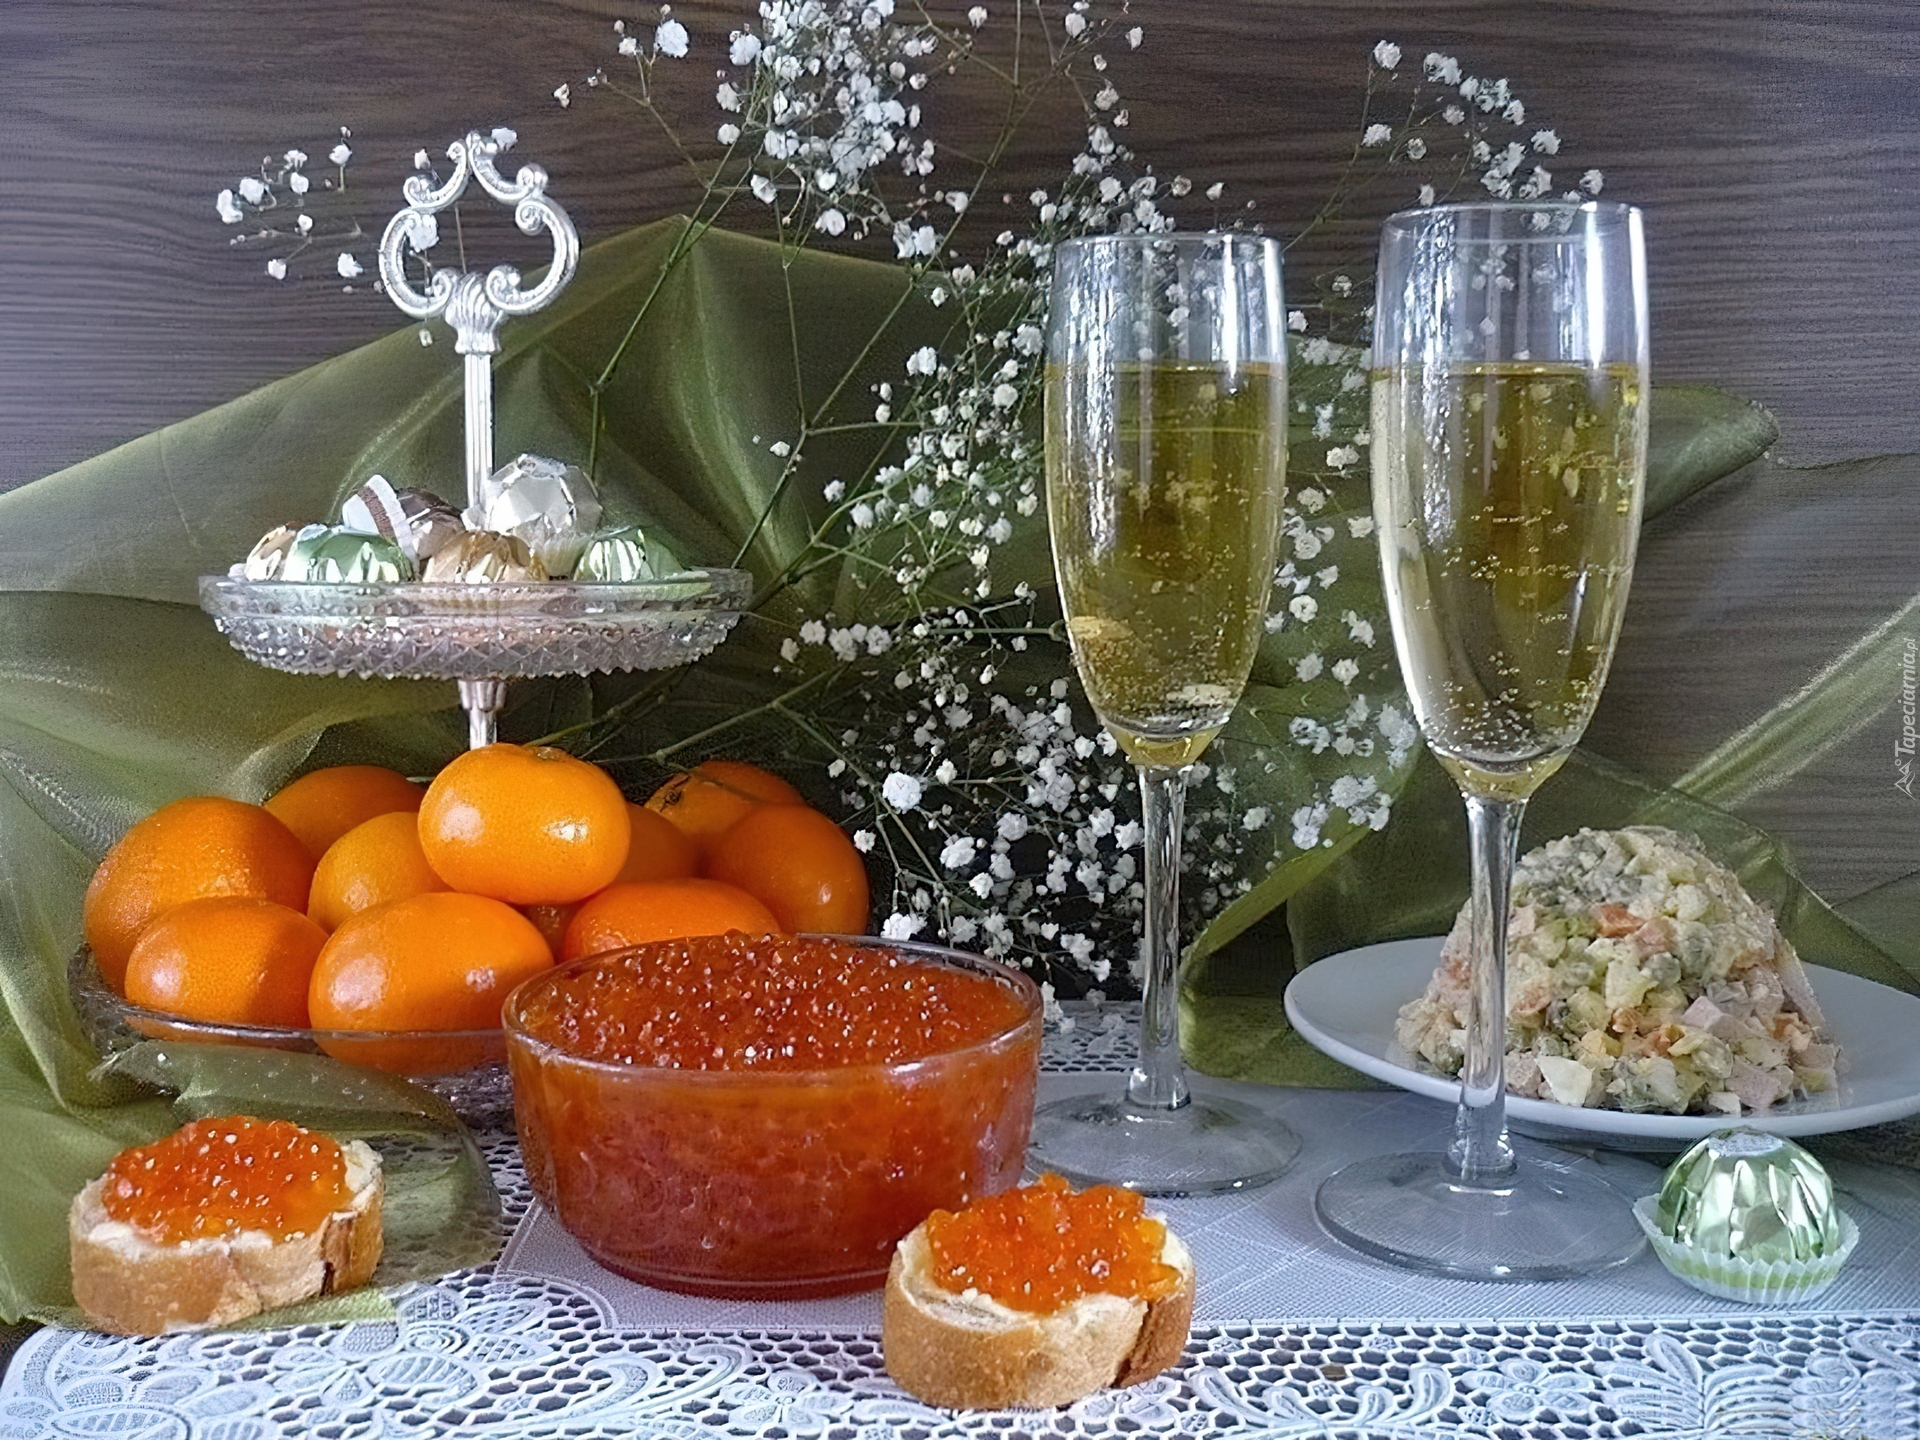 Мандарины оливье. Икра на новогоднем столе. Новогодний и праздничный стол. Стол с мандаринами и шампанским. Бутерброды с икрой и шампанское.